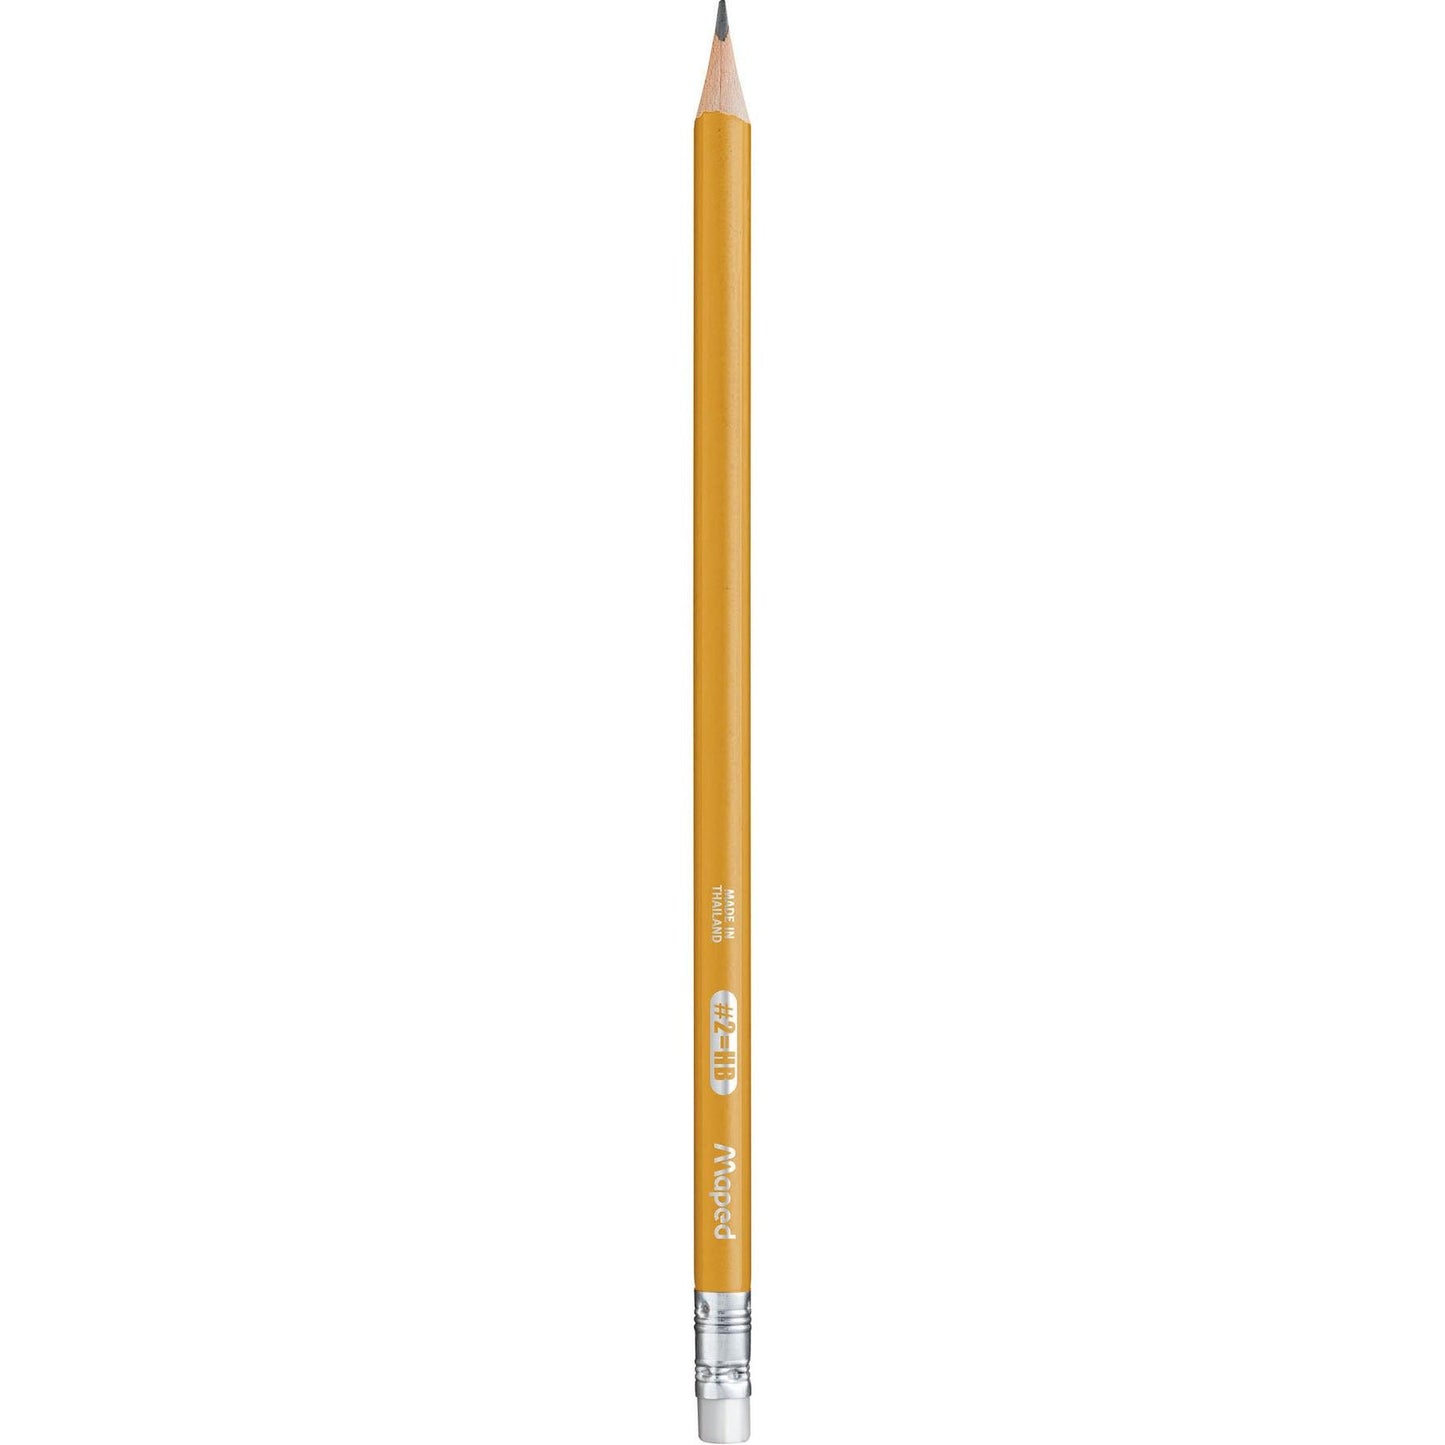 Essentials Triangular Graphite #2 Pencils, 12 Per Pack, 12 Packs - Loomini